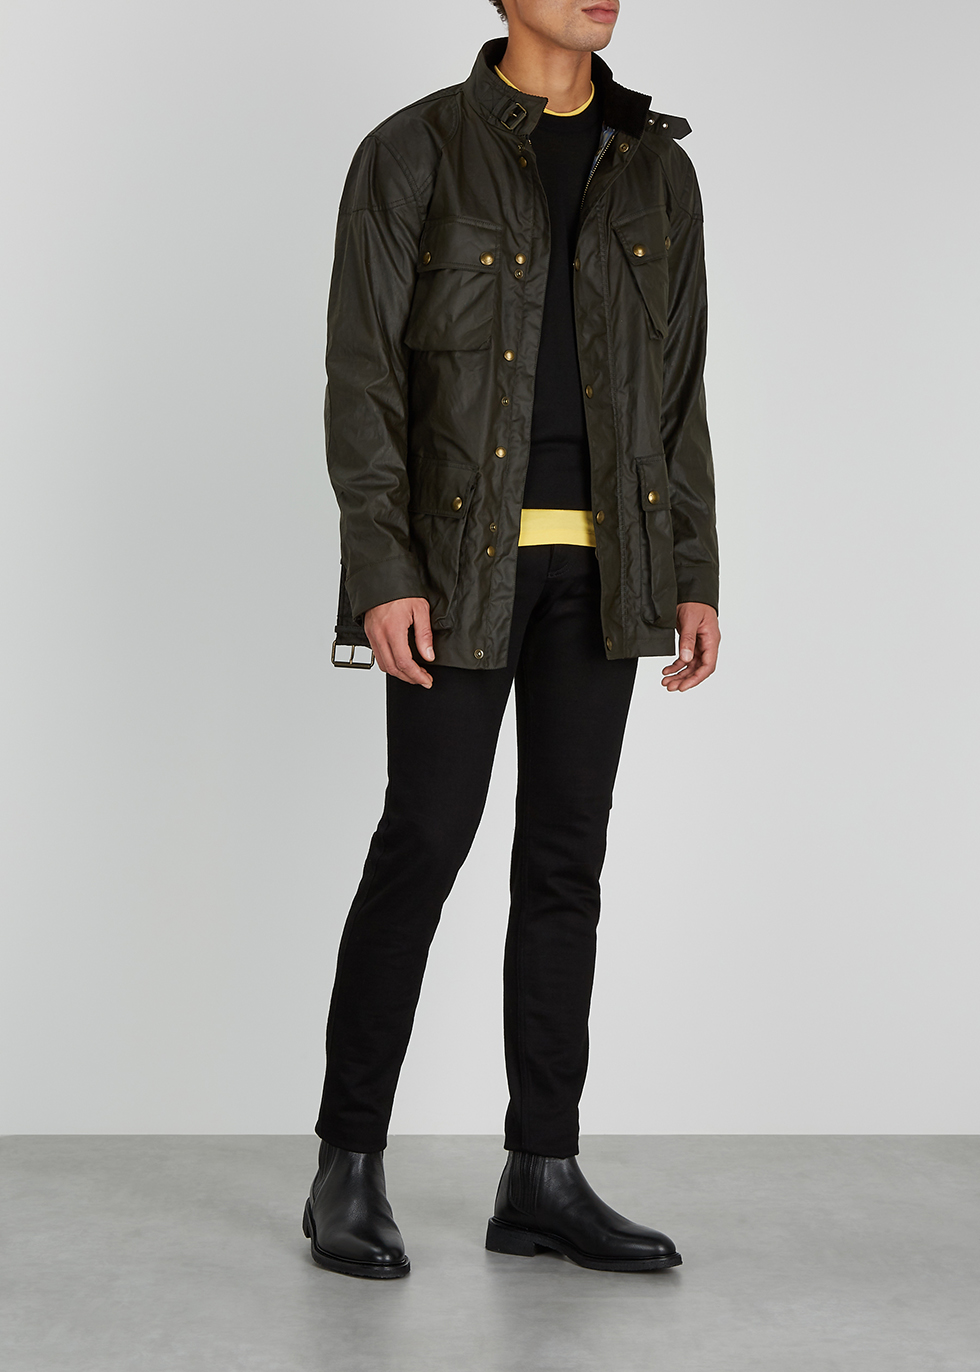 Men's Jacket in Genuine Soft Black Leather - Belfast Short